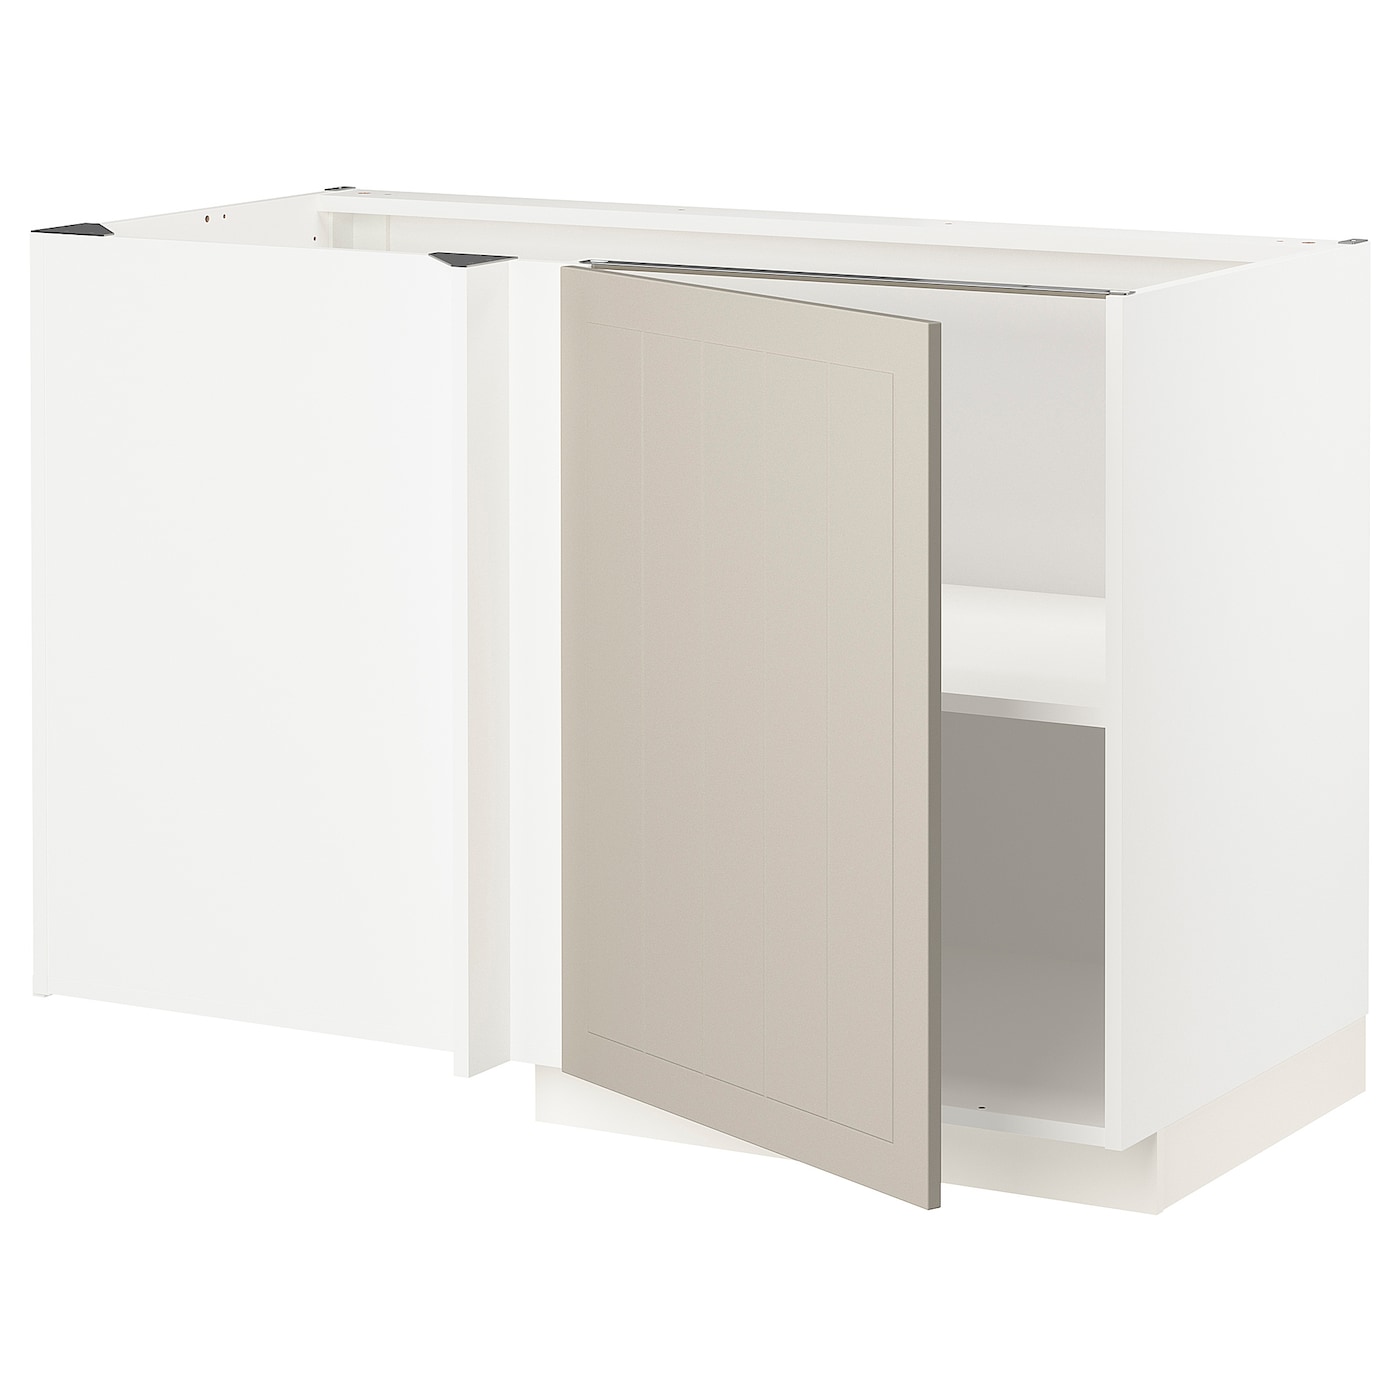 Напольный шкаф - METOD IKEA/ МЕТОД ИКЕА,  128х68 см, белый/светло-бежевый